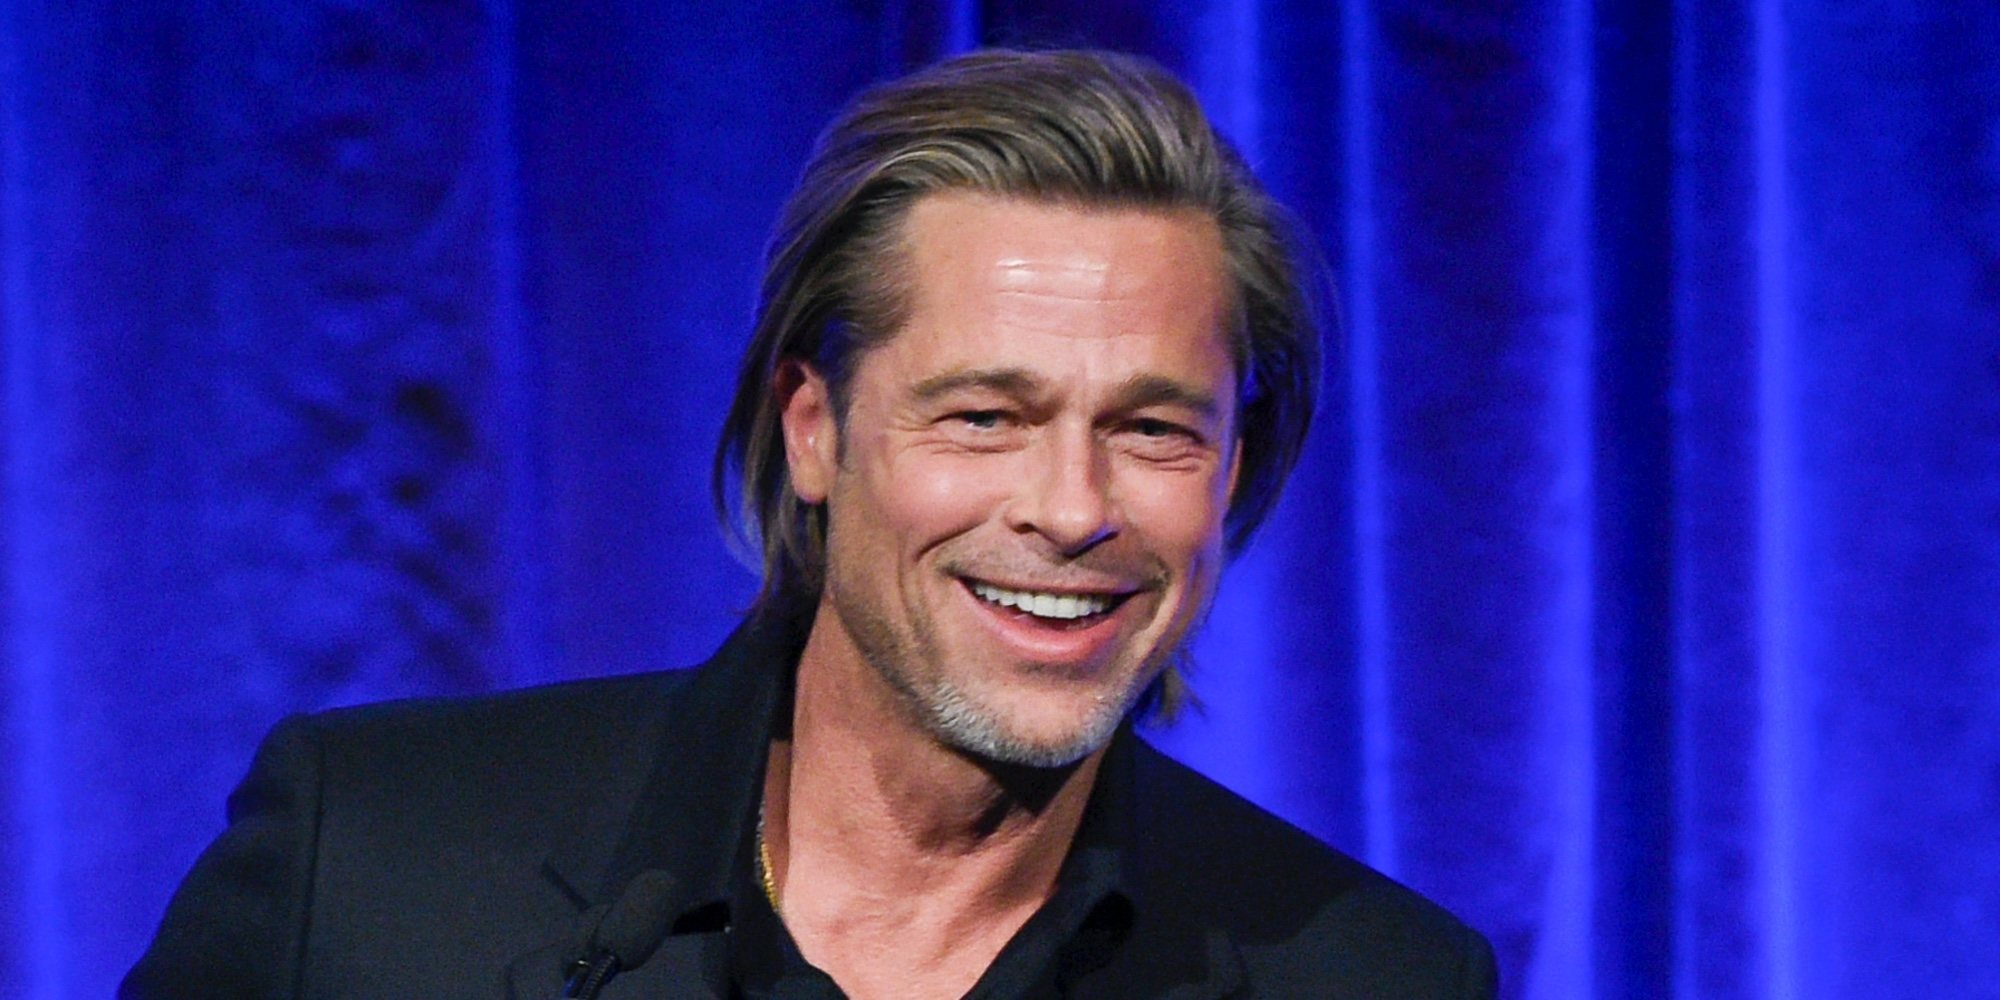 Brad Pitt agradece a Bradley Cooper que le ayudara a superar sus adicciones: "Estuve sobrio gracias a él"